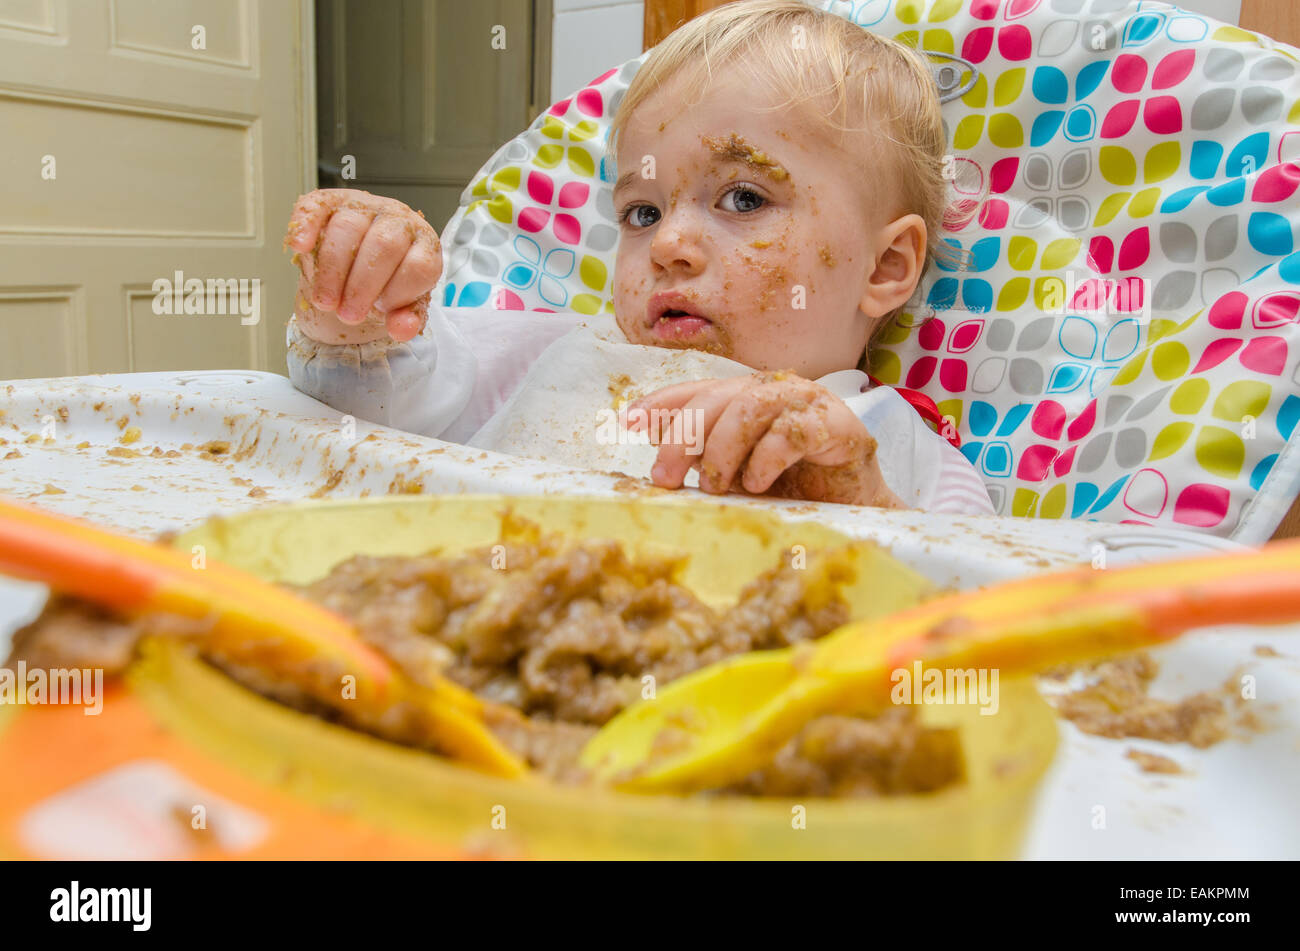 Ein kleinen Jungen (ca. 18 Monate alt) macht ein heilloses Durcheinander seine Mahlzeit. Stockfoto